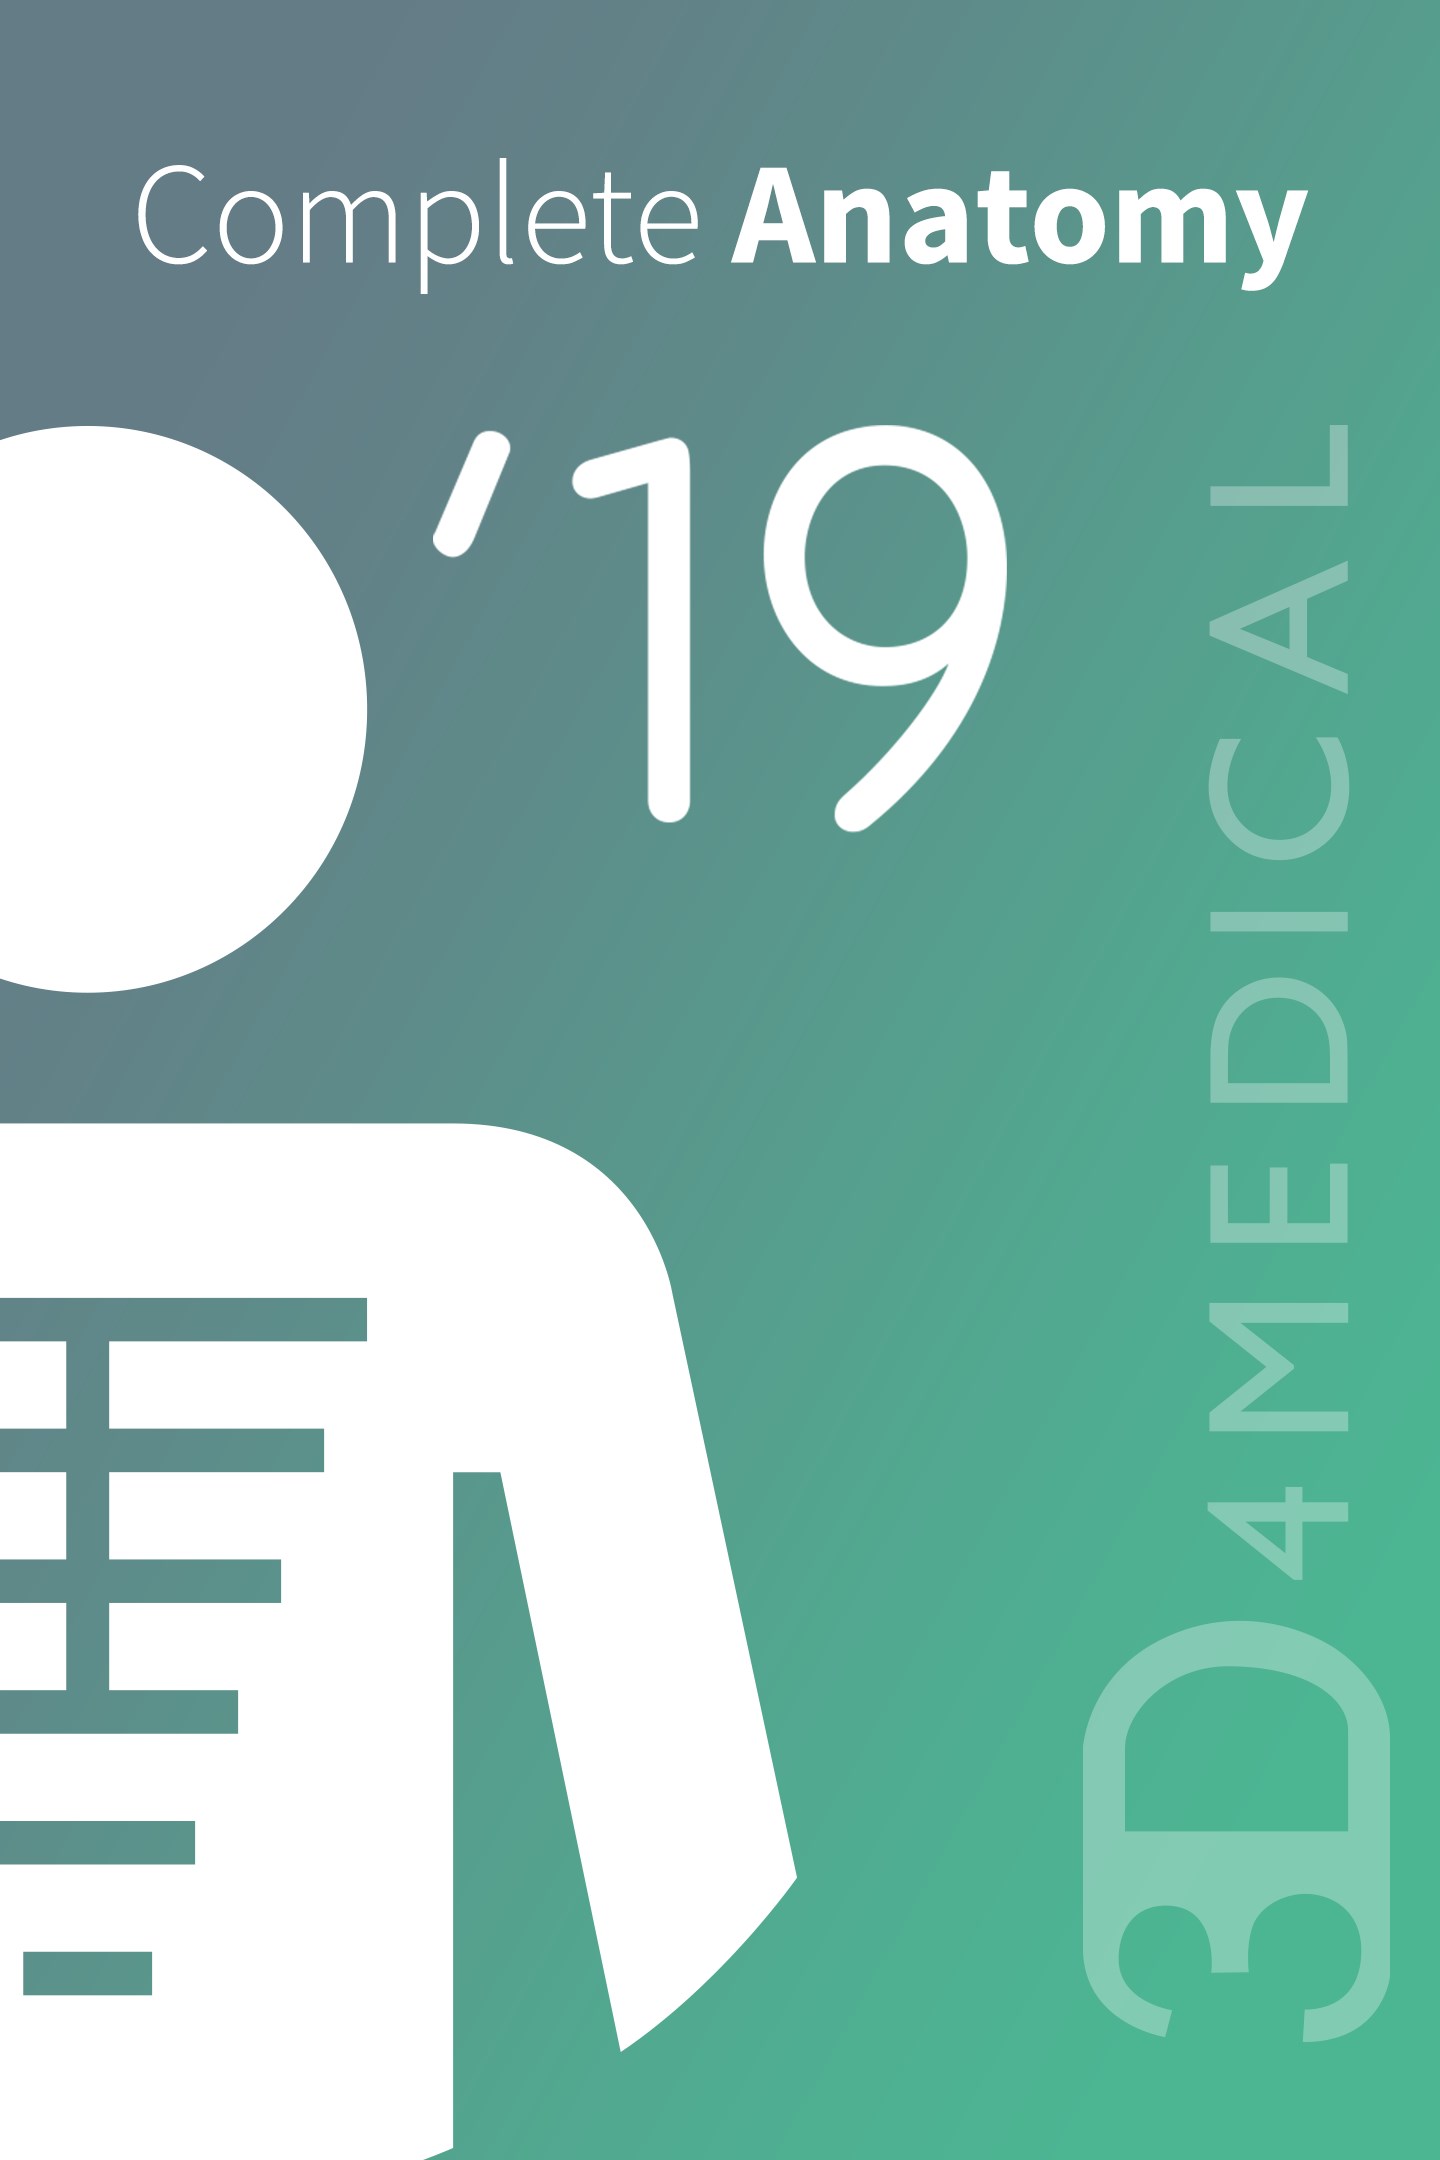 34 Top Photos Complete Anatomy App Quiz : Medical Anatomy Quiz Pro 1 APK Download - Android ...